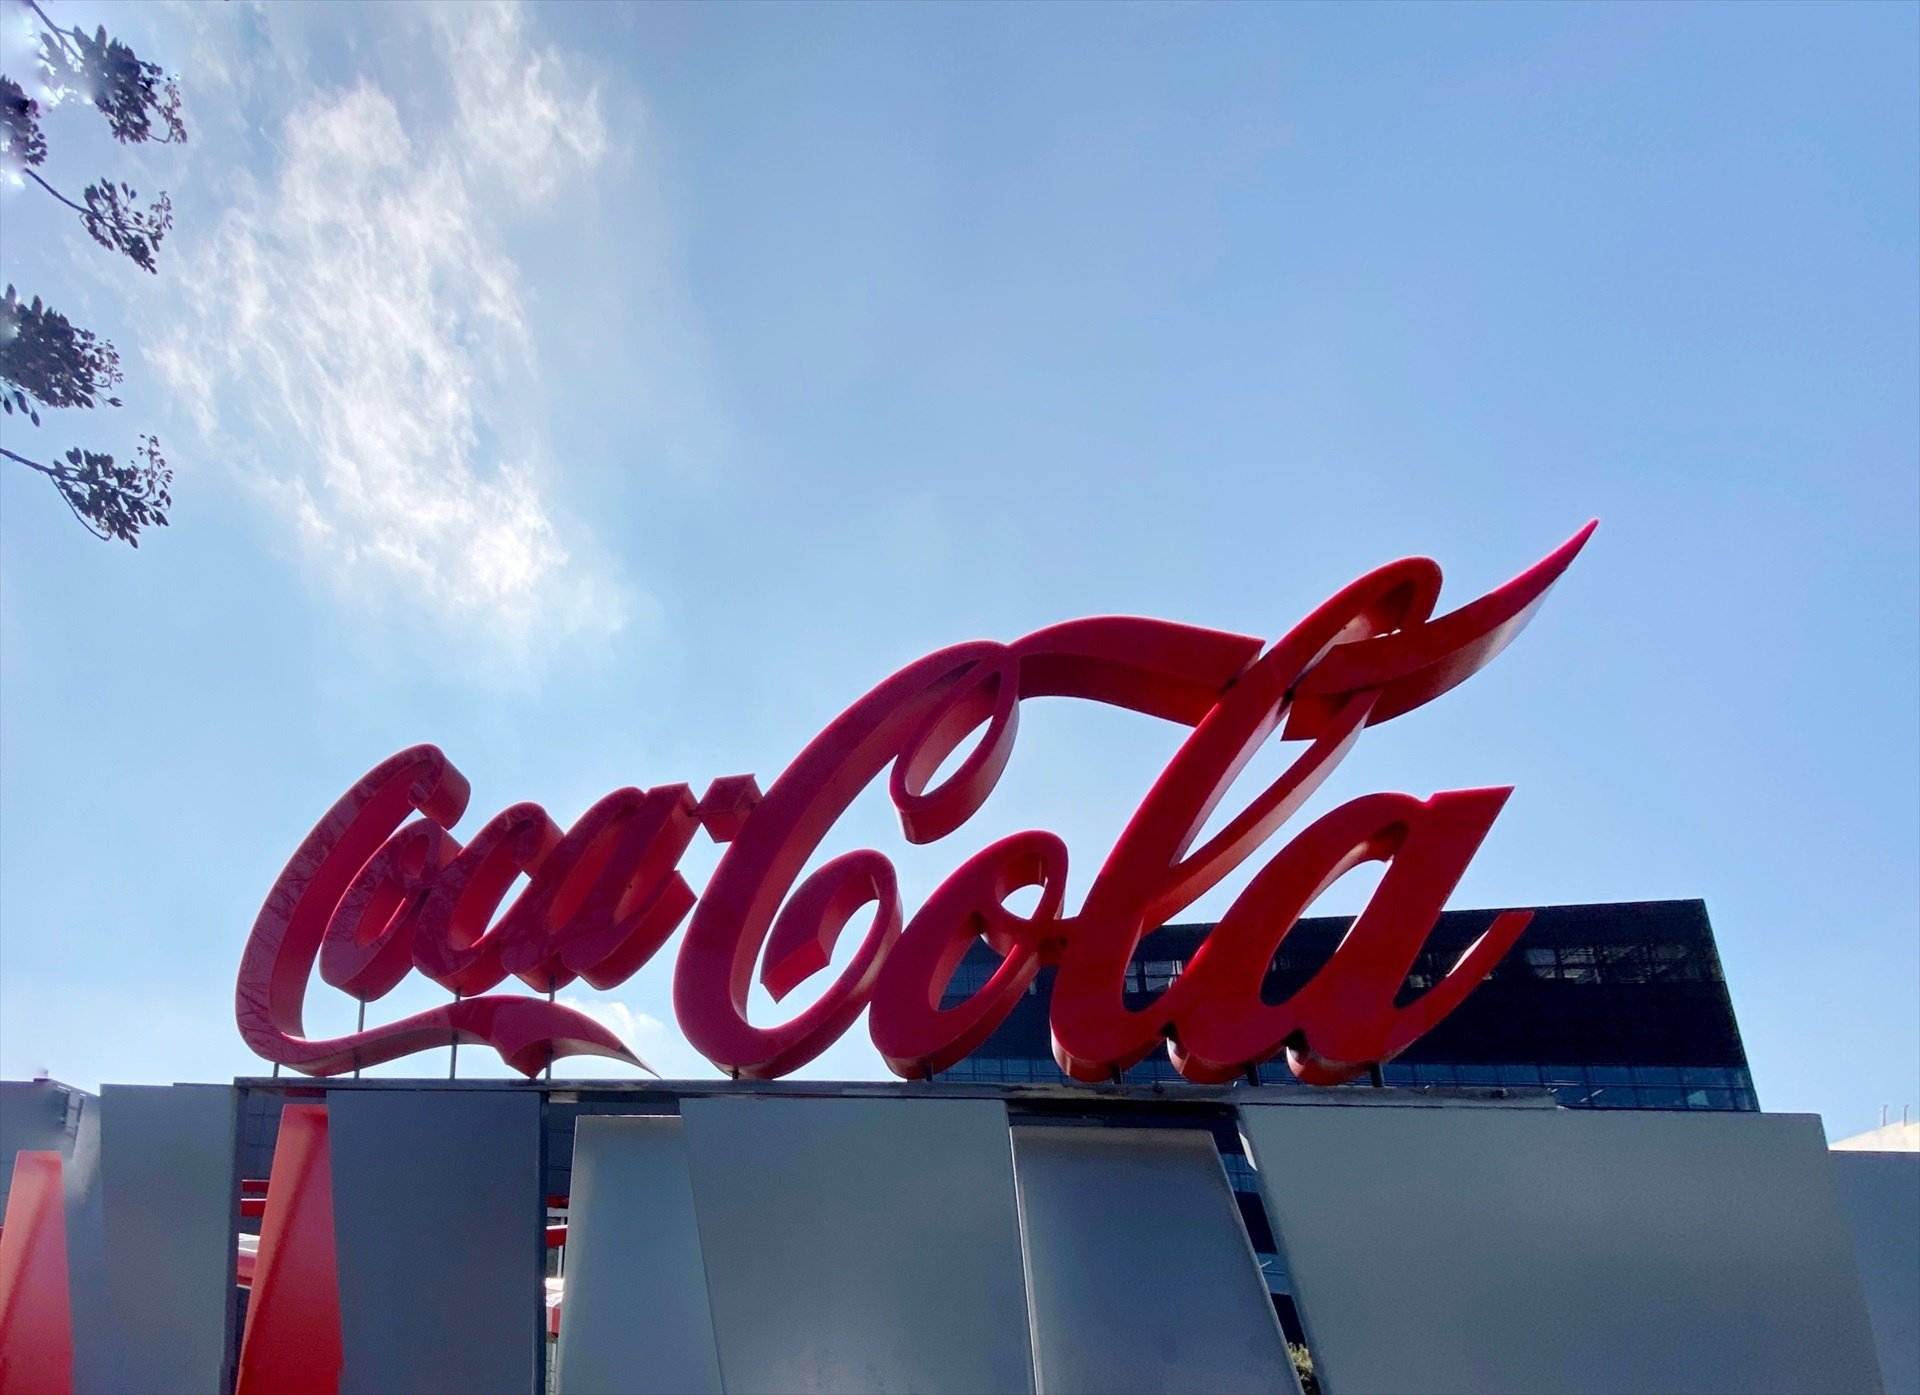 Sol Daurella ya preside la embotelladora de Coca-Cola más grande del mundo